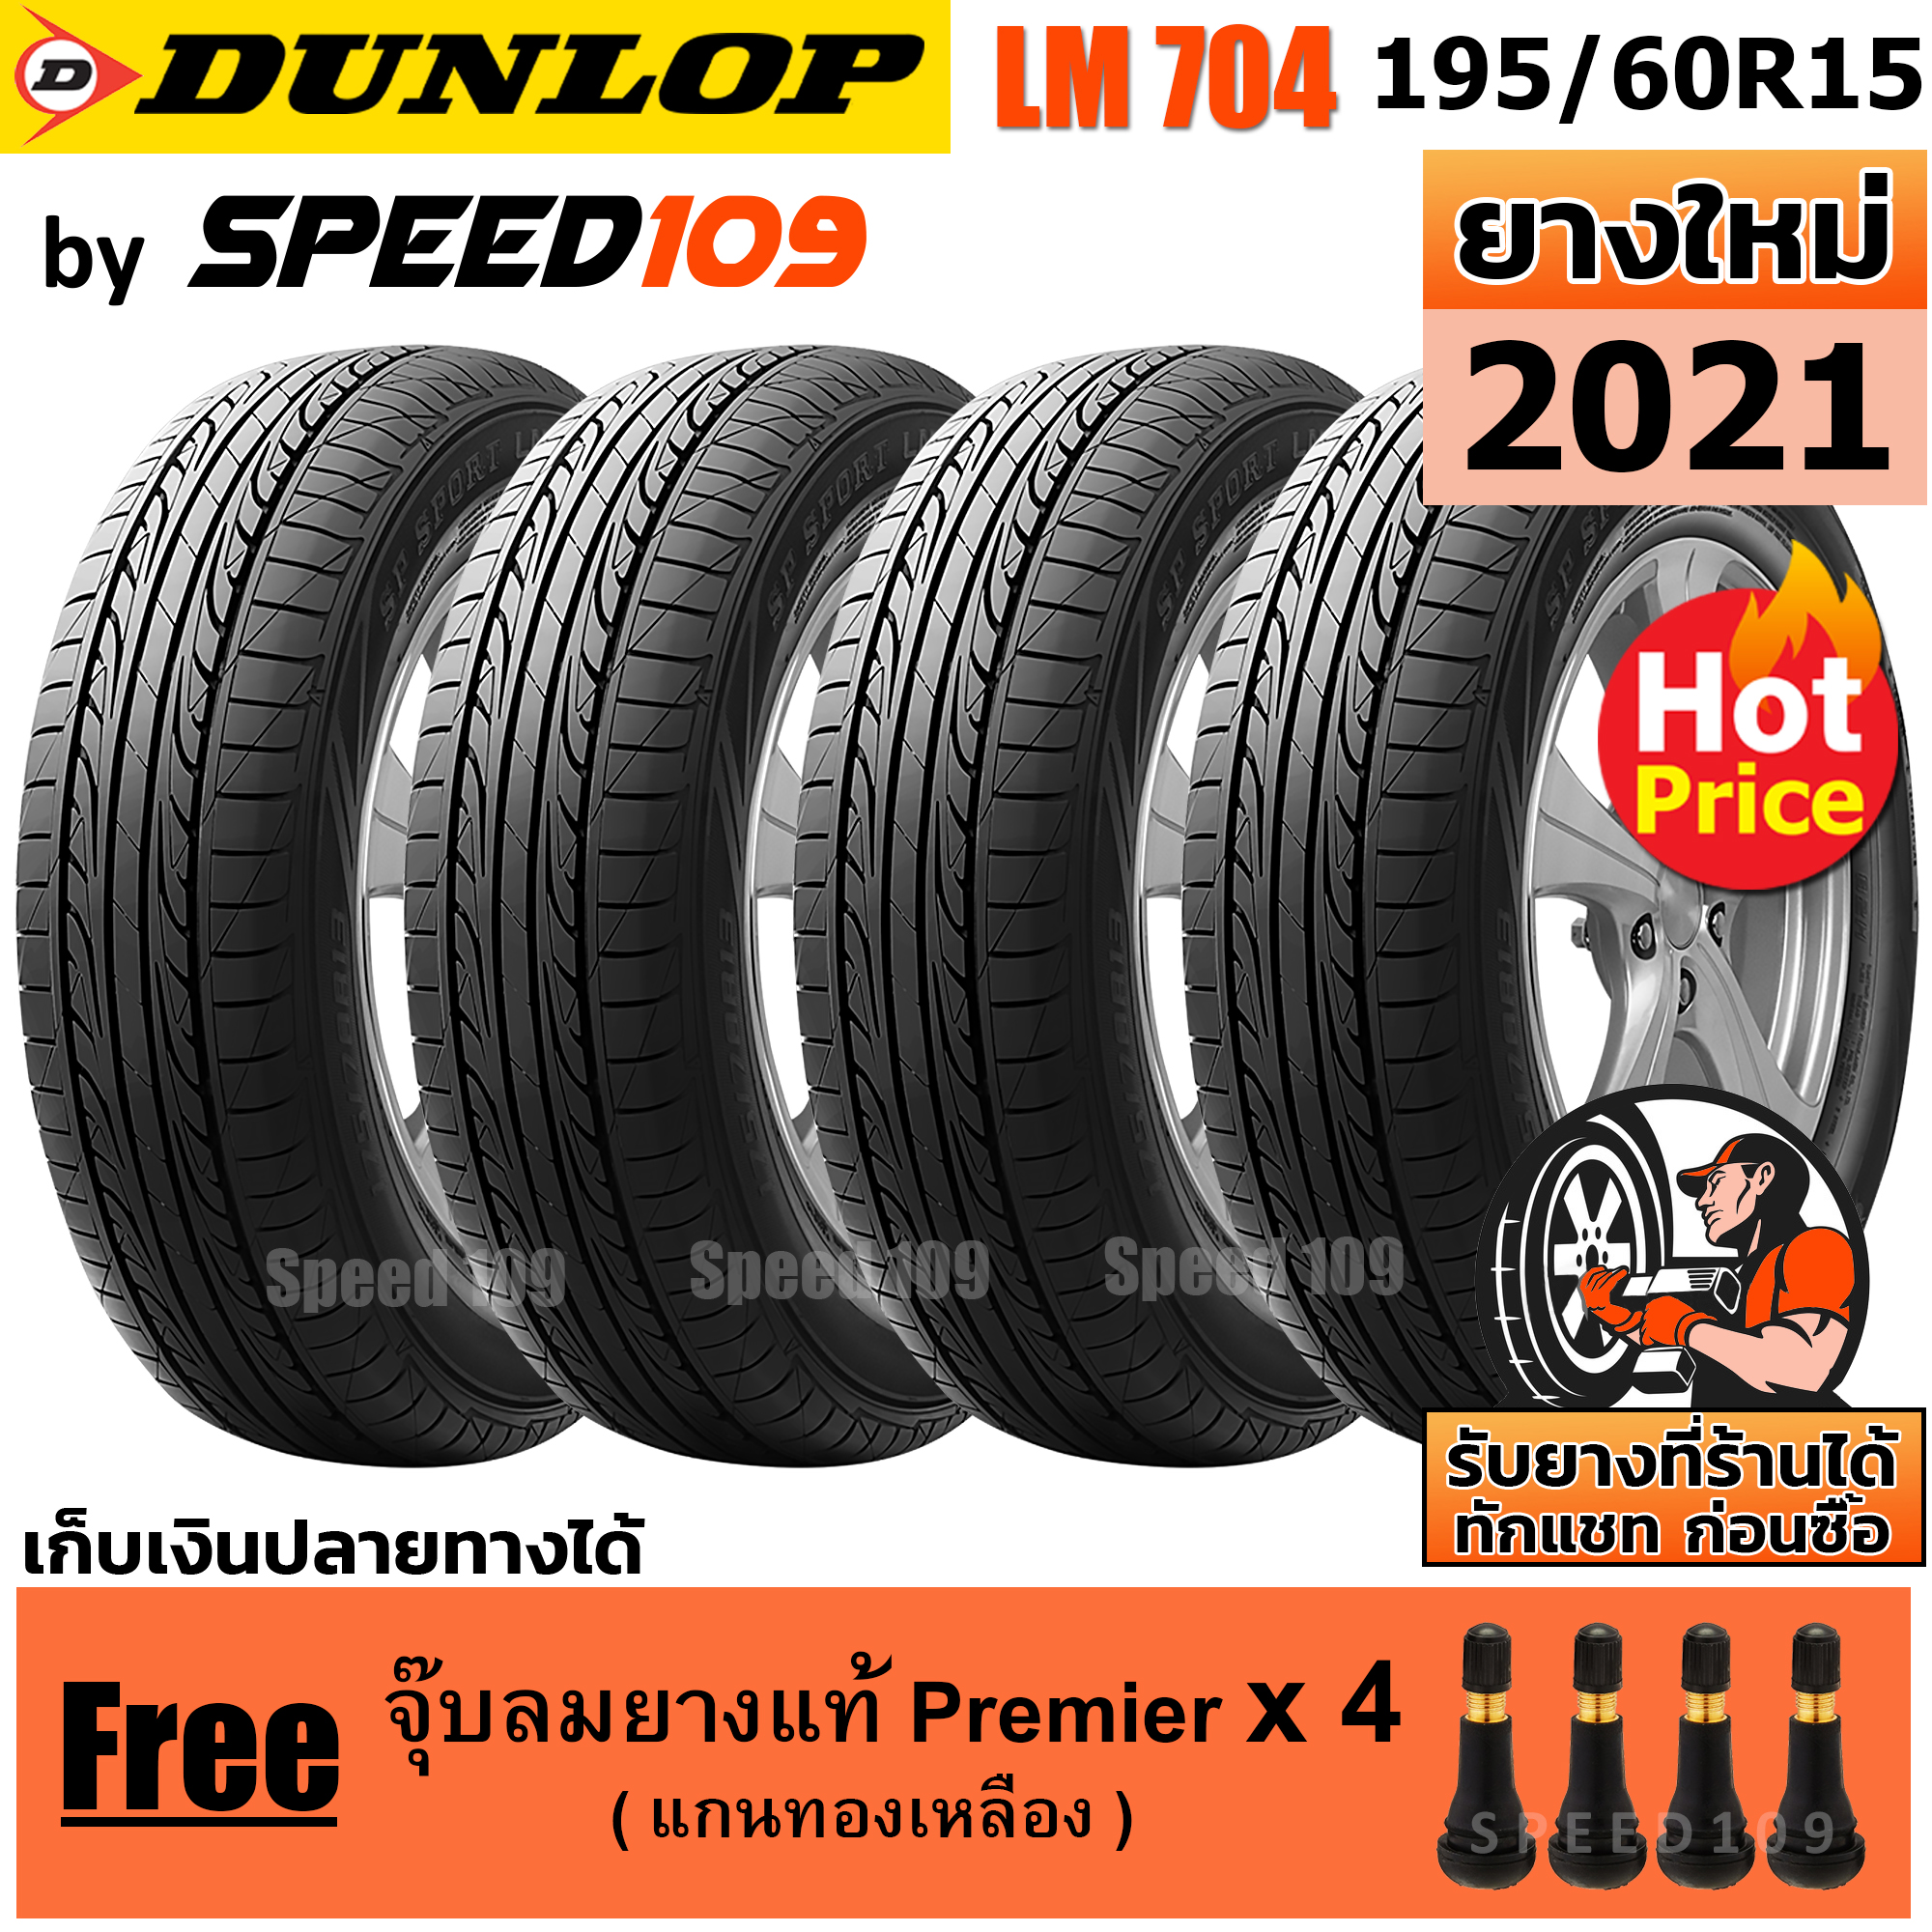 DUNLOP ยางรถยนต์ ขอบ 15 ขนาด 195/60R15 รุ่น SP SPORT LM704 - 4 เส้น (ปี 2021)